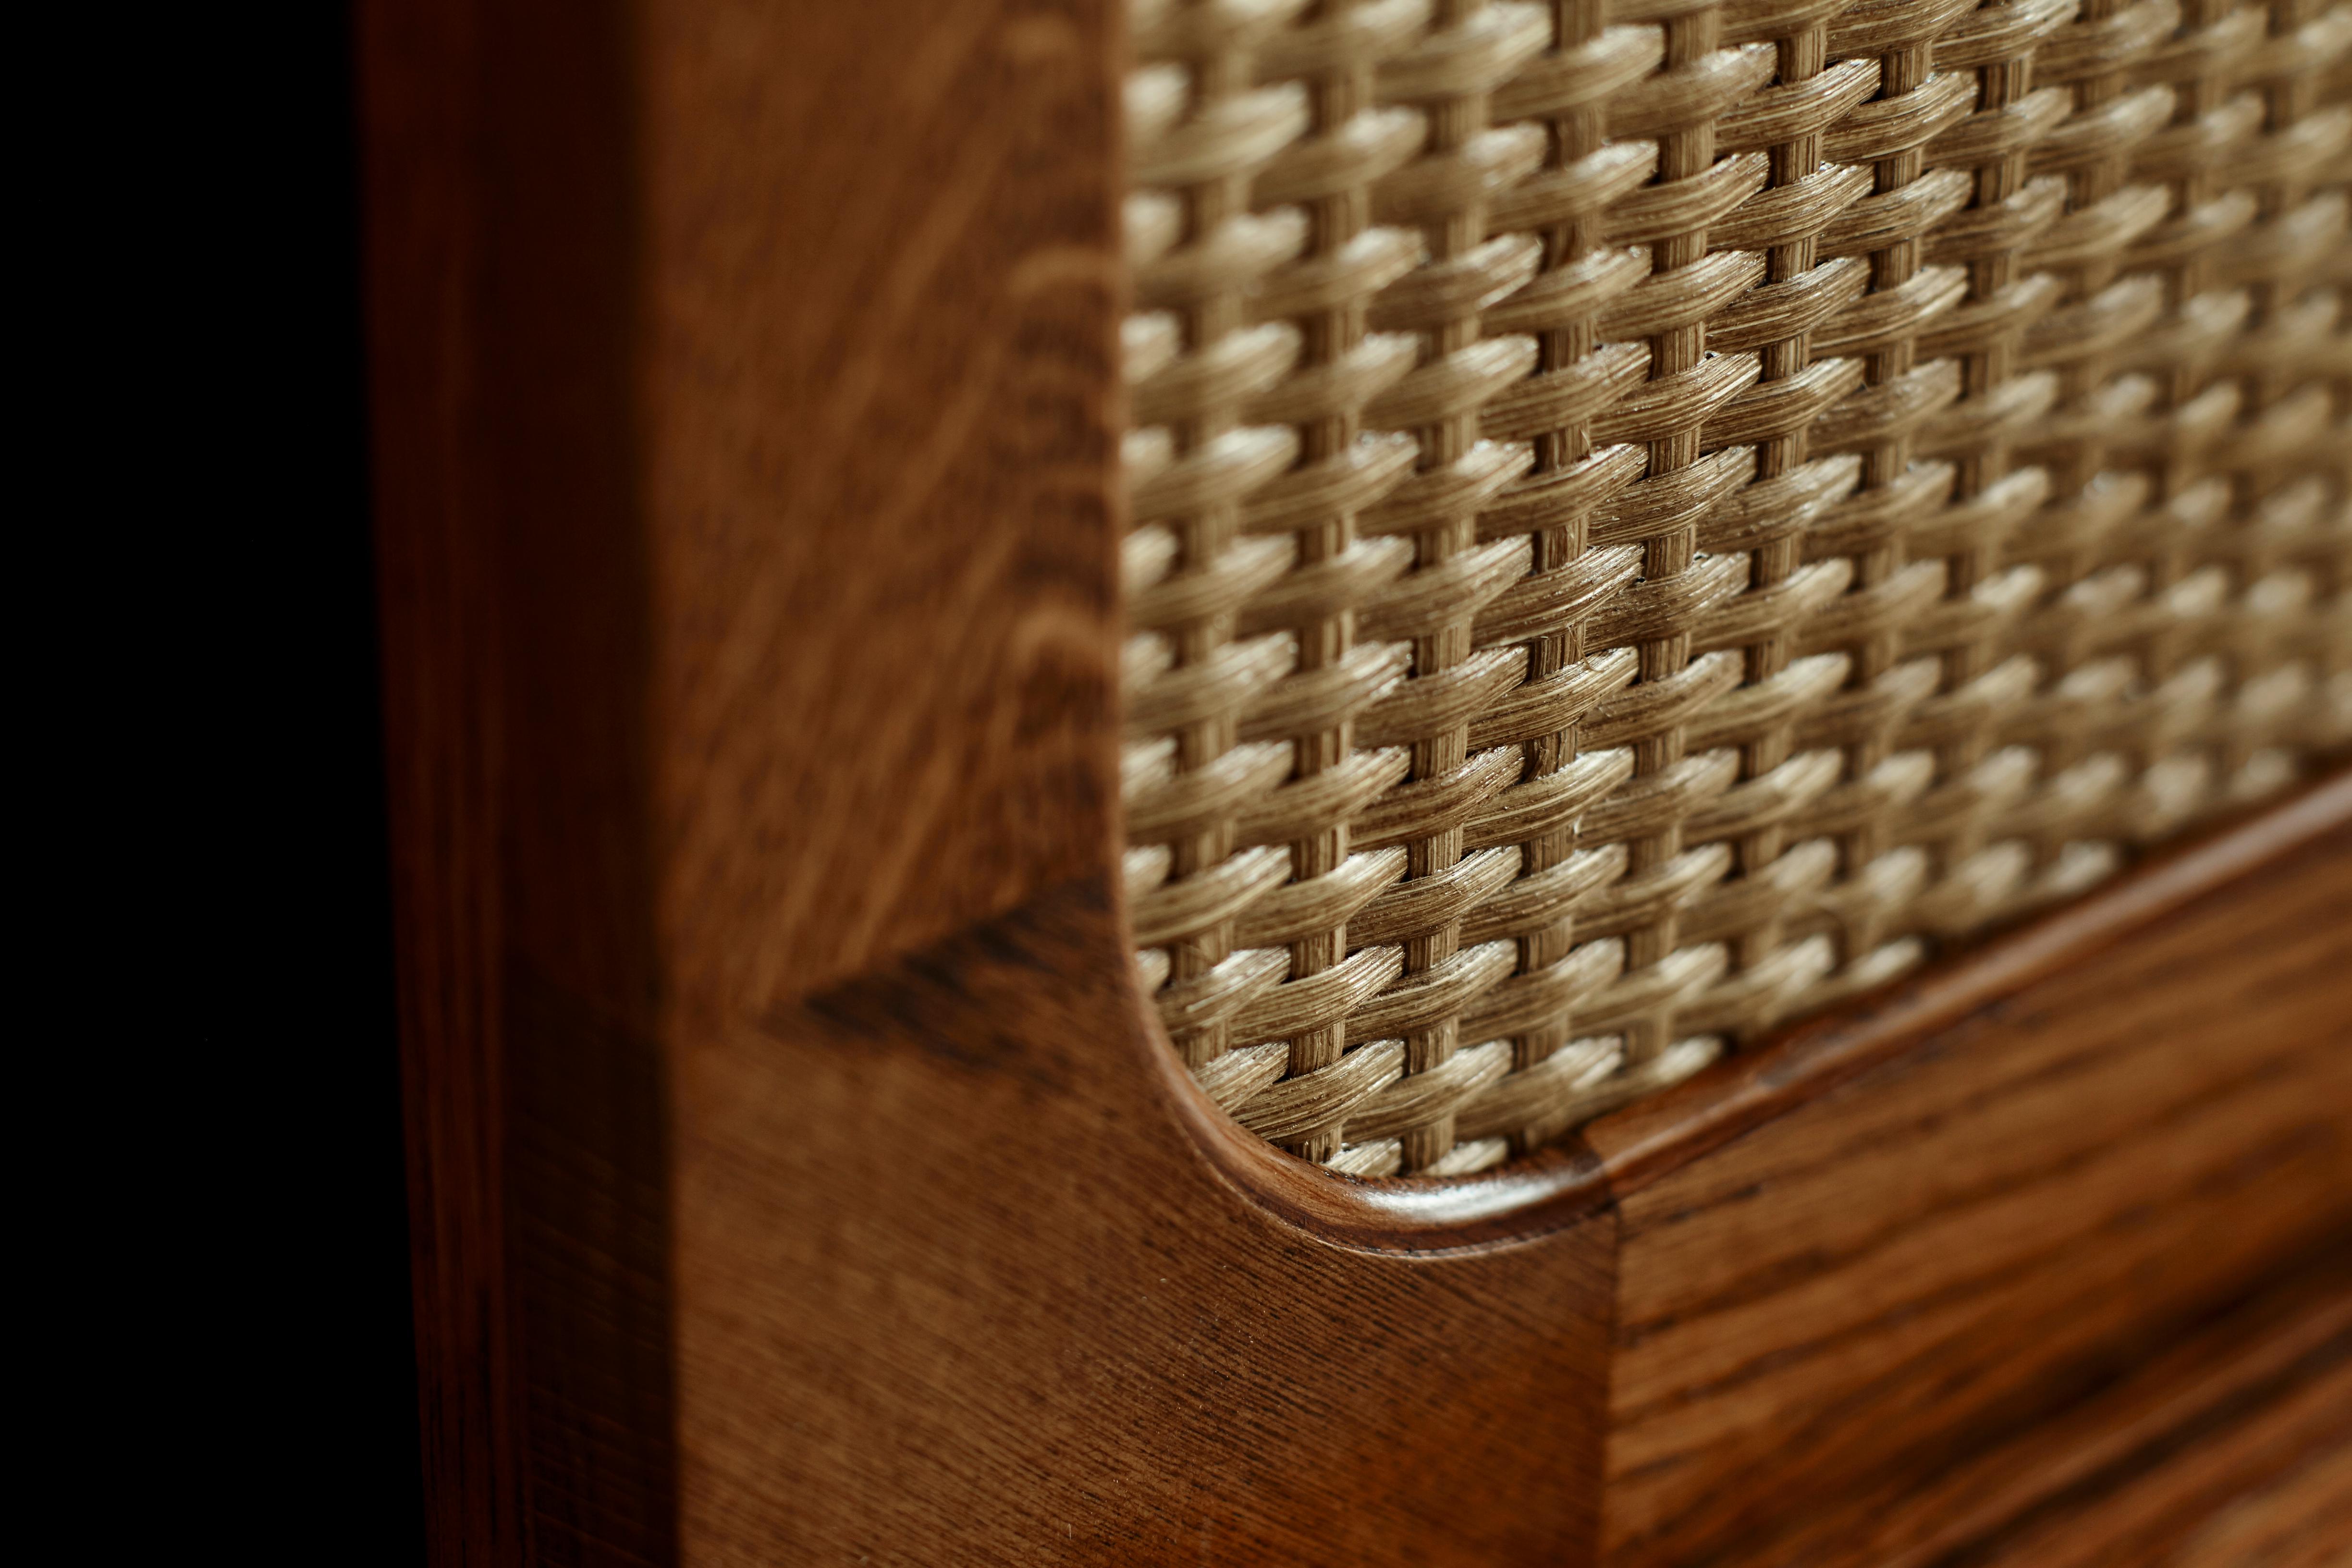 Ein Sideboard aus europäischer Eiche und Rattan, das von Lind + Almond speziell für Sanders, Kopenhagens führendes Luxus-Boutique-Hotel, entwickelt wurde.

Erhältlich in zwei Holztönen, Cognac und Eiche Natur. Auf Bestellung in Europa handgefertigt.